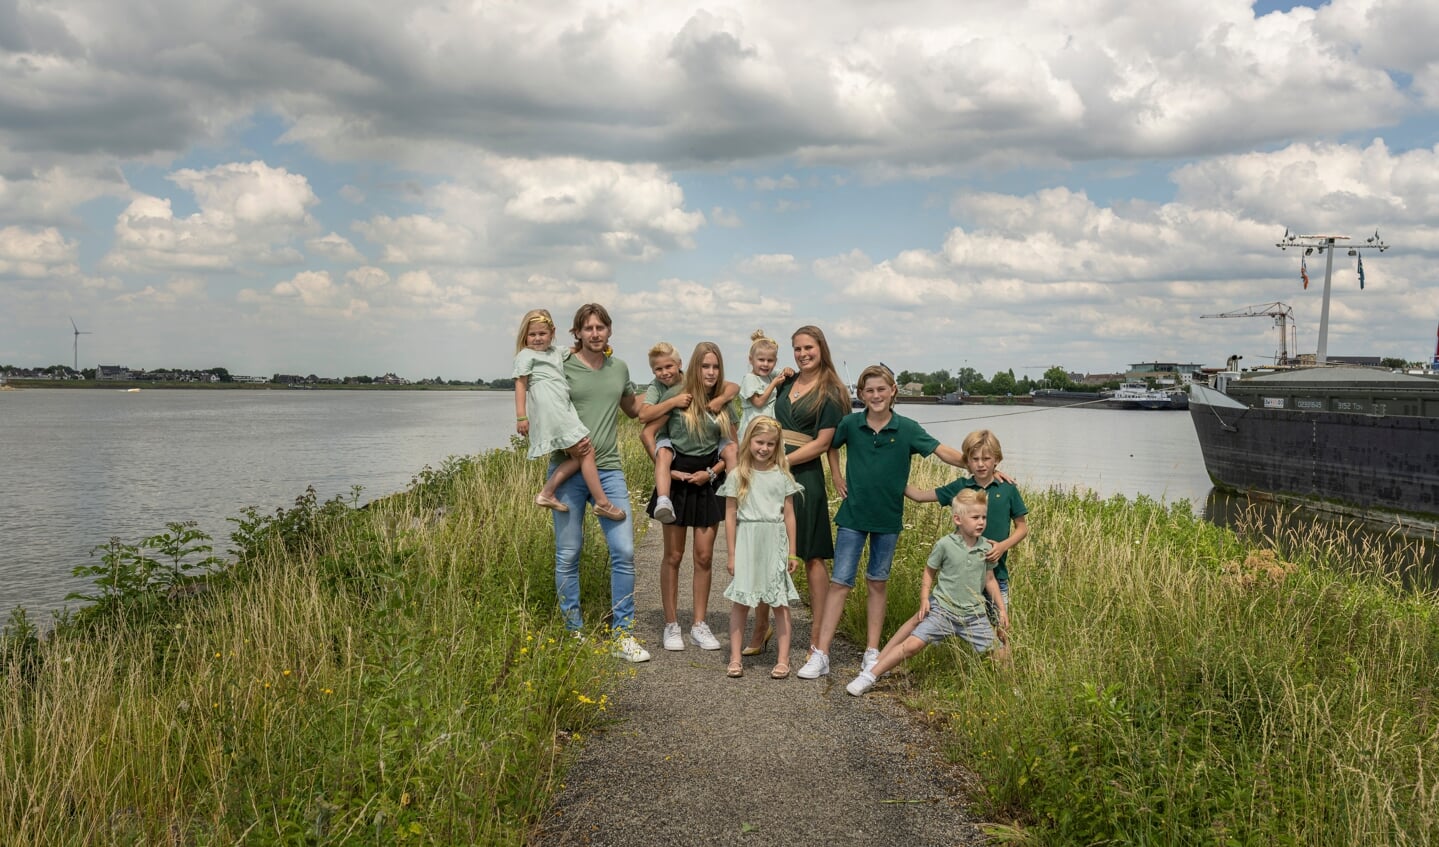 Familie Zeldenrust uit Brabant is dit jaar voor het eerst te zien bij de populaire tv-serie 'Een huis vol'.